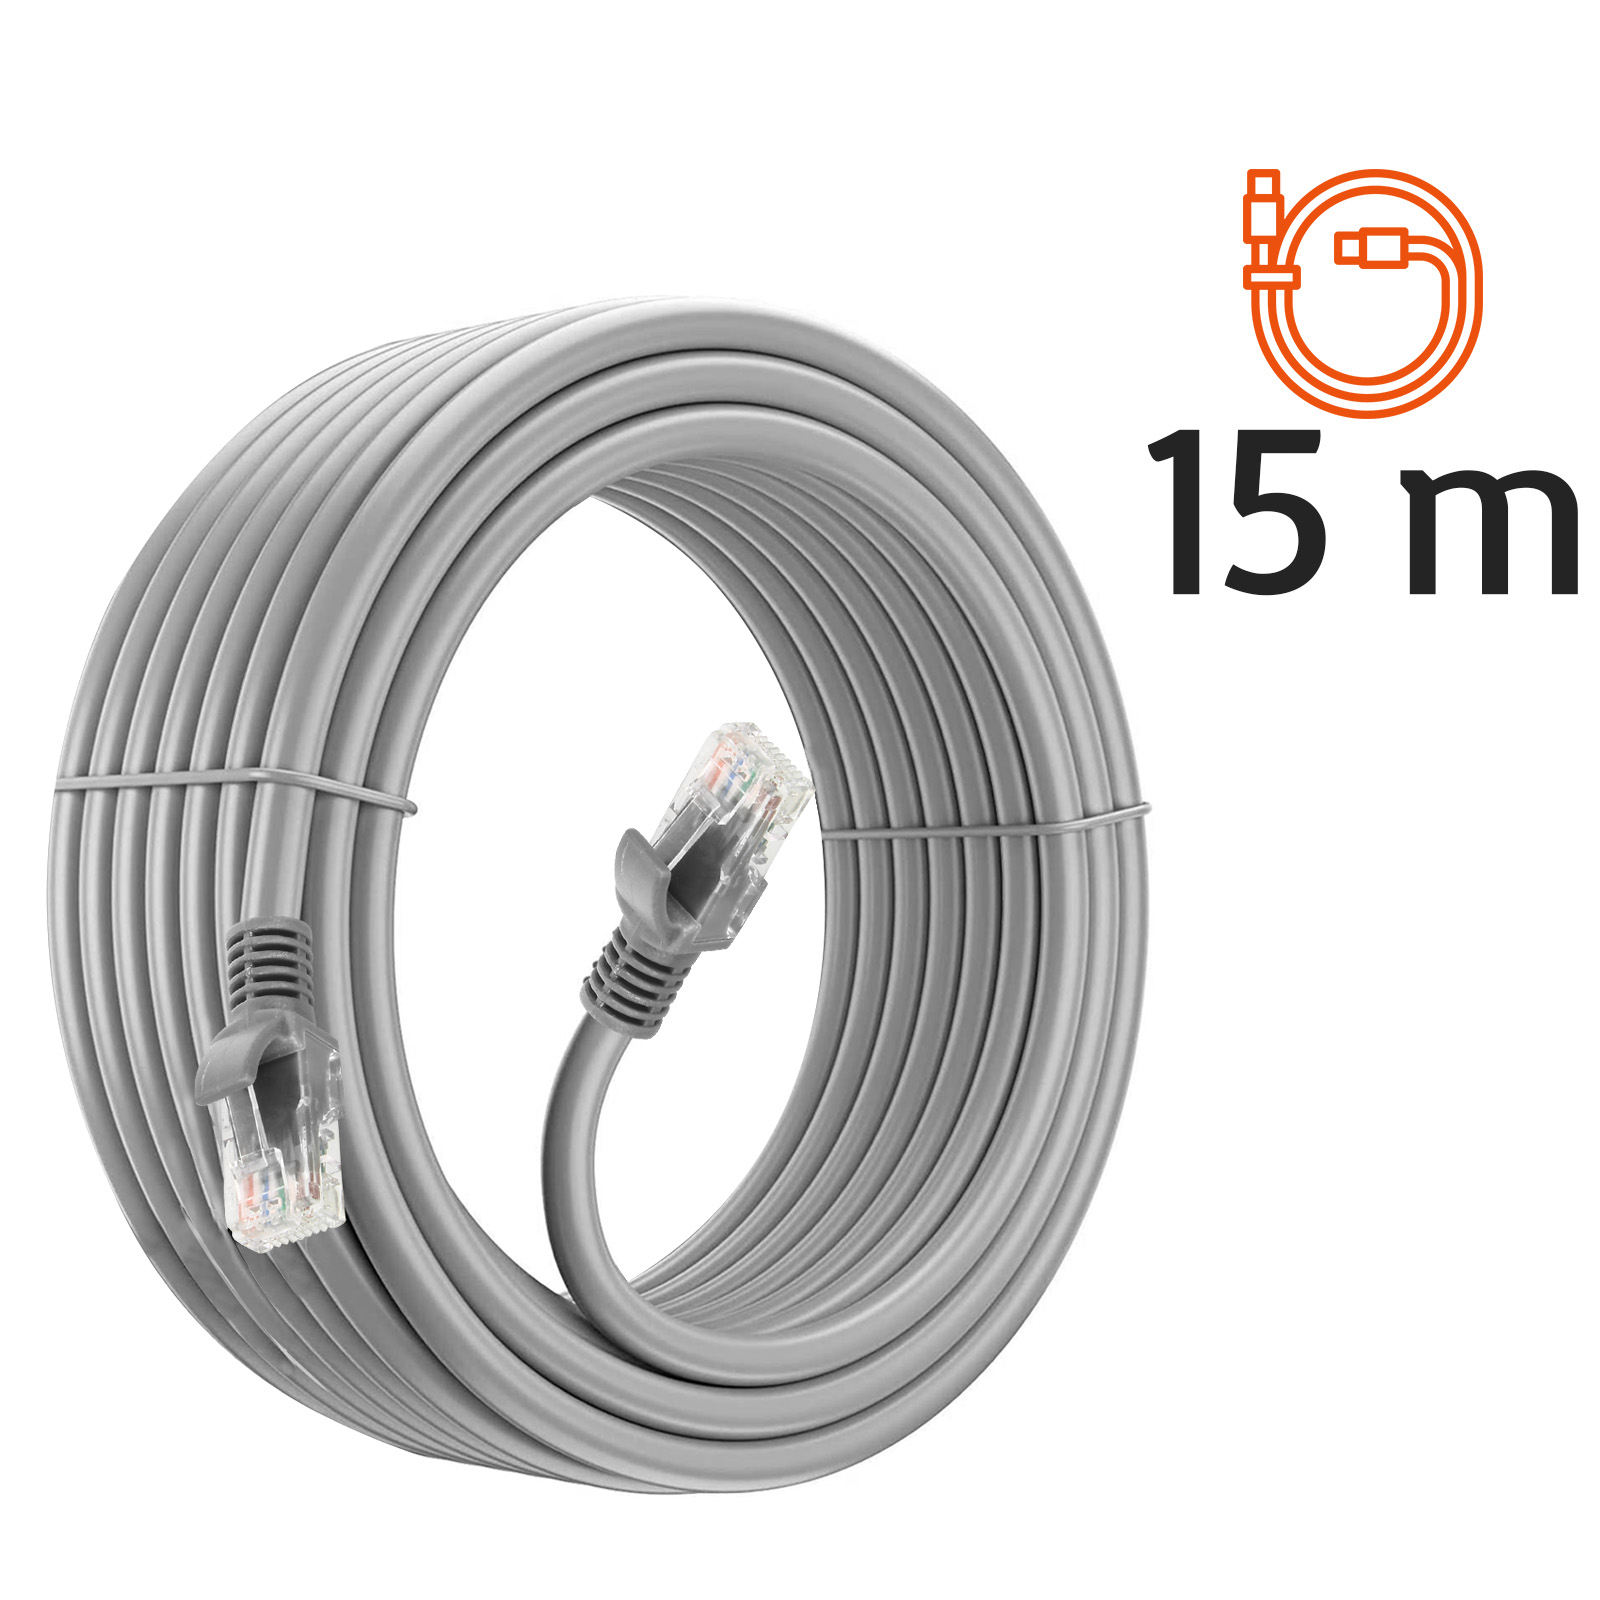 Cable Ethernet 15m, Cat 6 Cable RJ45 15m Haute Vitesse Câble